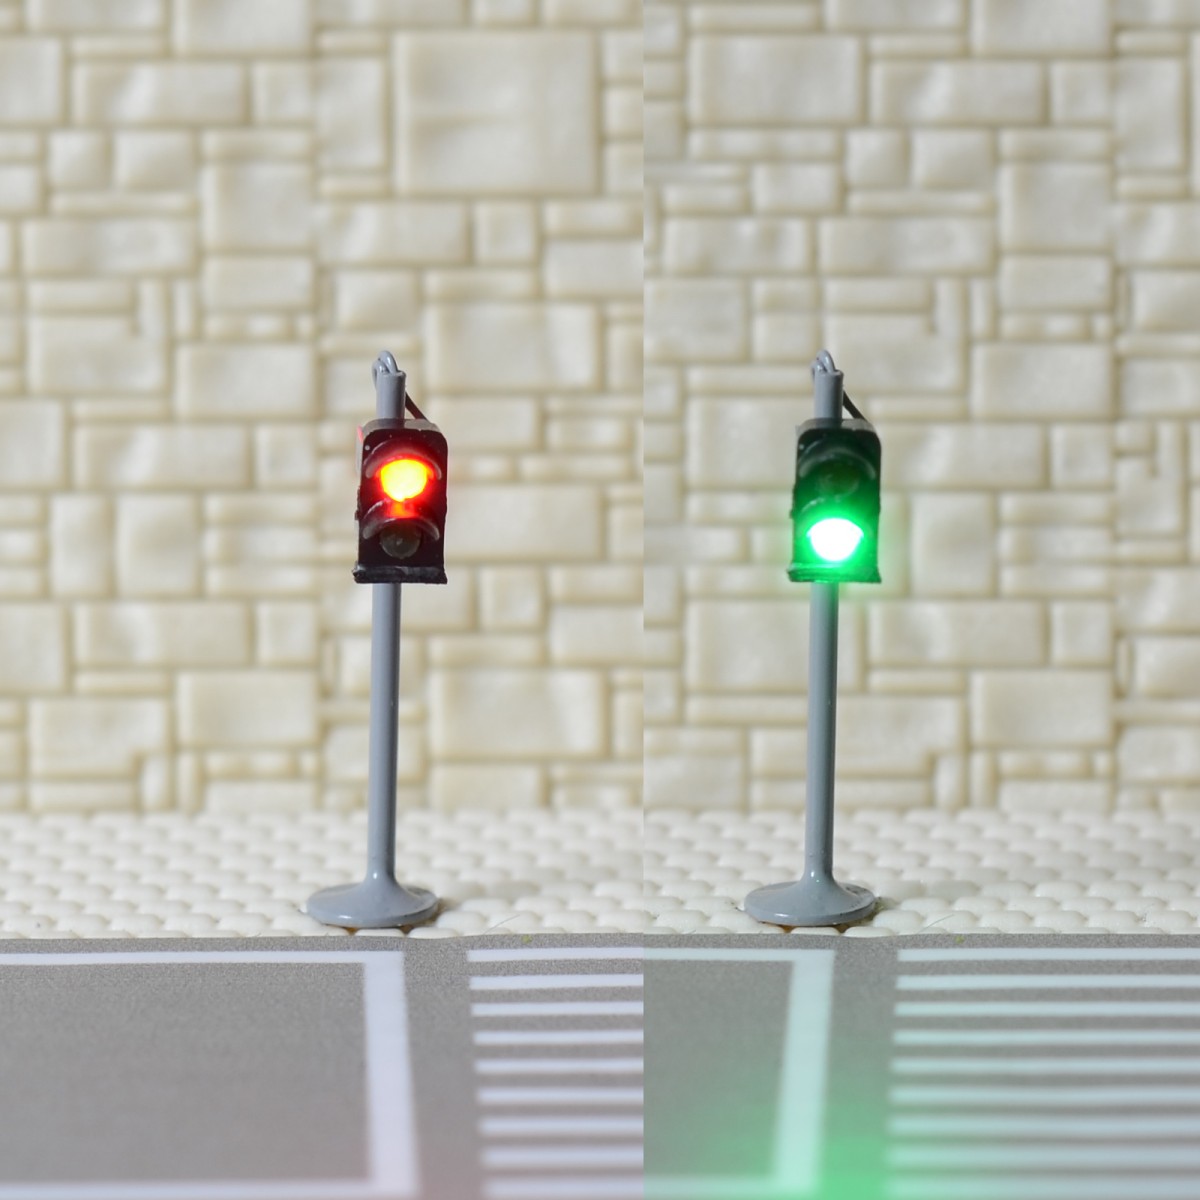 1 x traffic signal light N scale model railroad crossing walk pedestrian #GR2N 